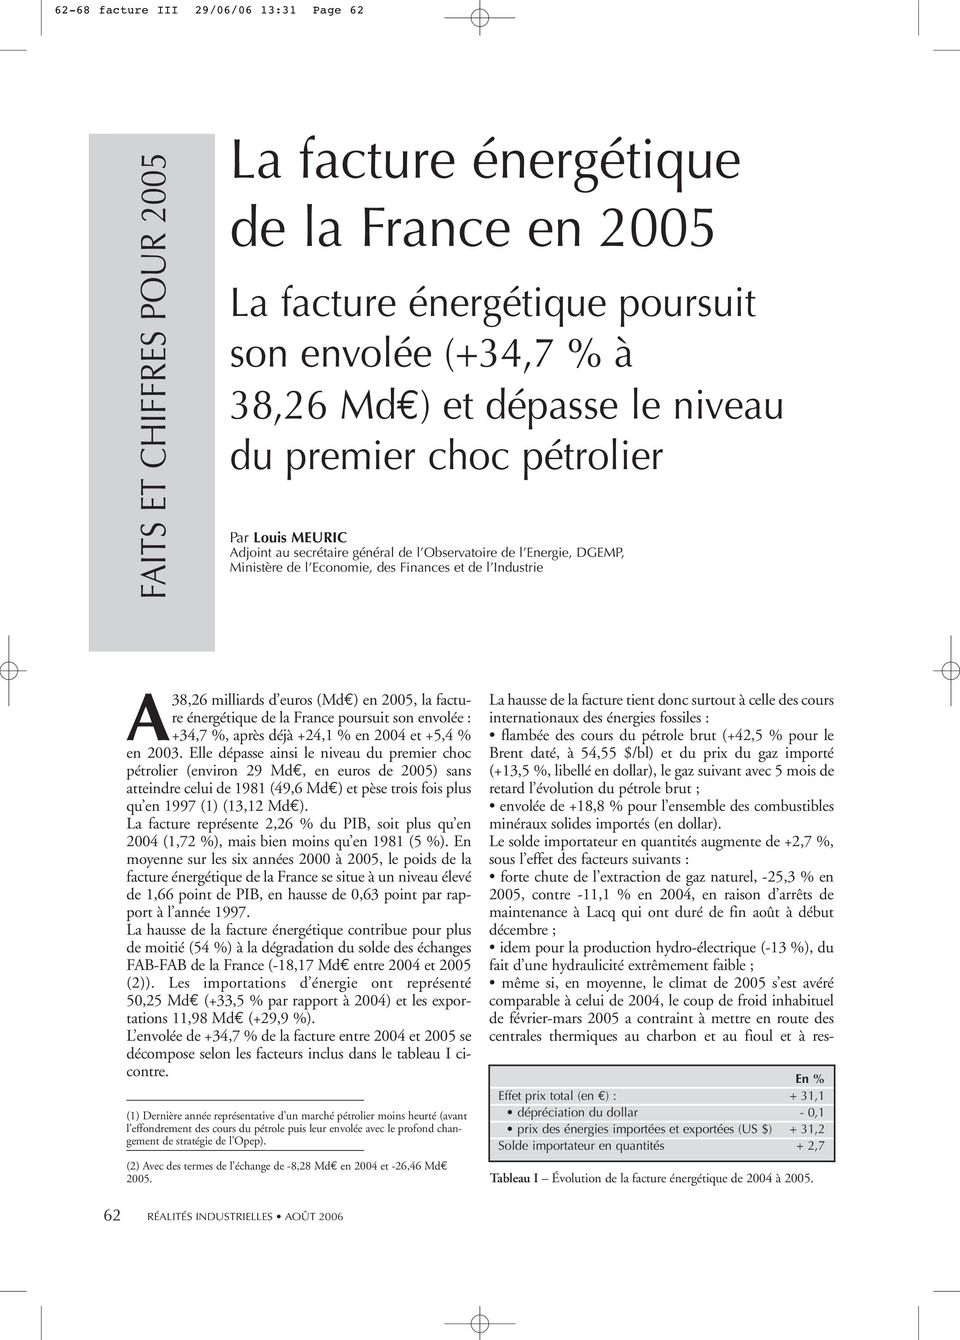 en 2005, la facture énergétique de la France poursuit son envolée : +34,7 %, après déjà +24,1 % en 2004 et +5,4 % en 2003.